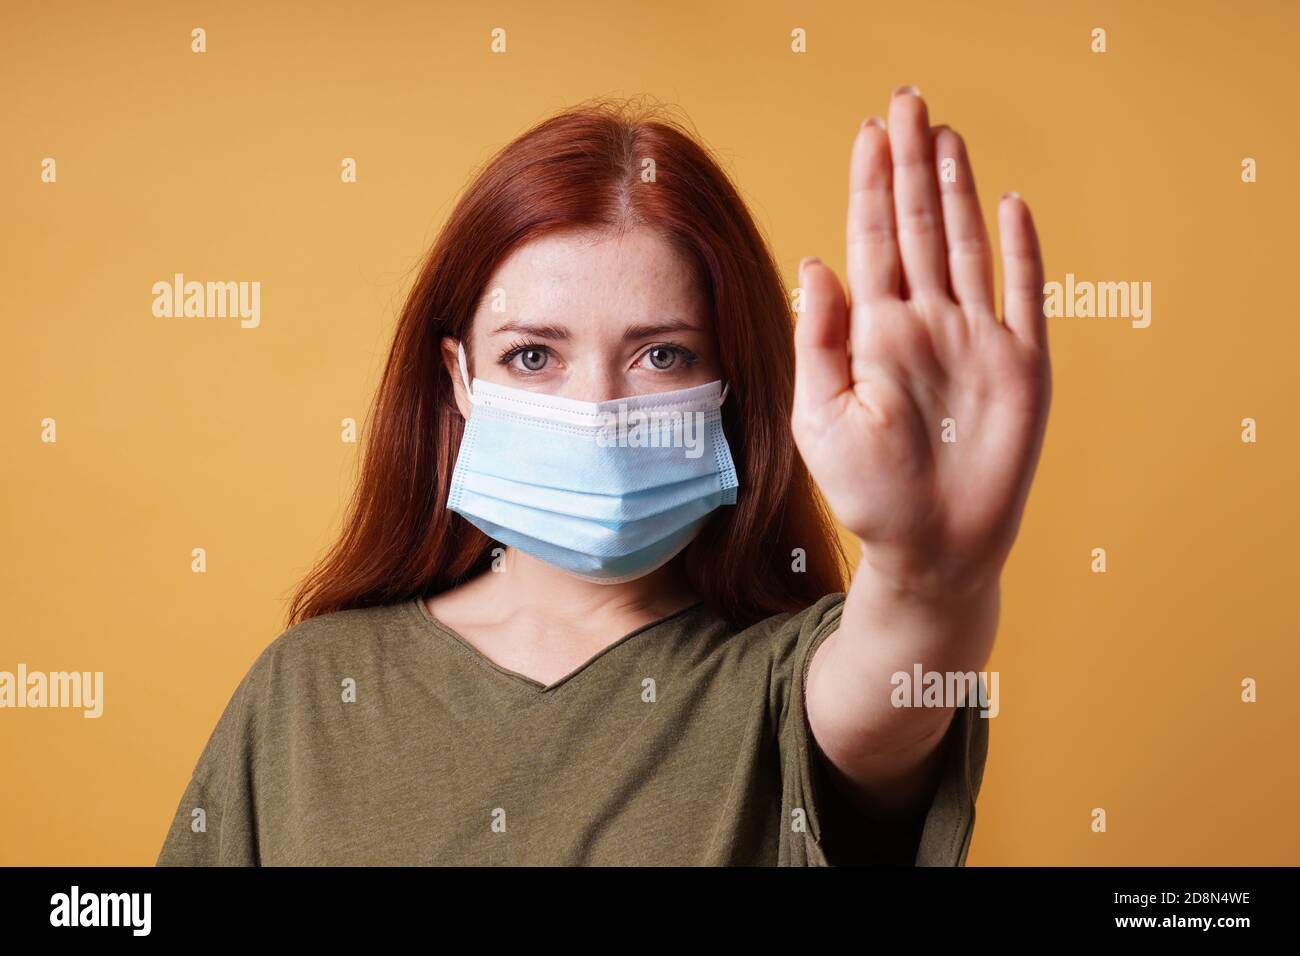 jeune femme portant un masque médical faisant un geste d'arrêt avec sa main - pas d'entrée sans masque pendant corona covid-19 concept de pandémie Banque D'Images